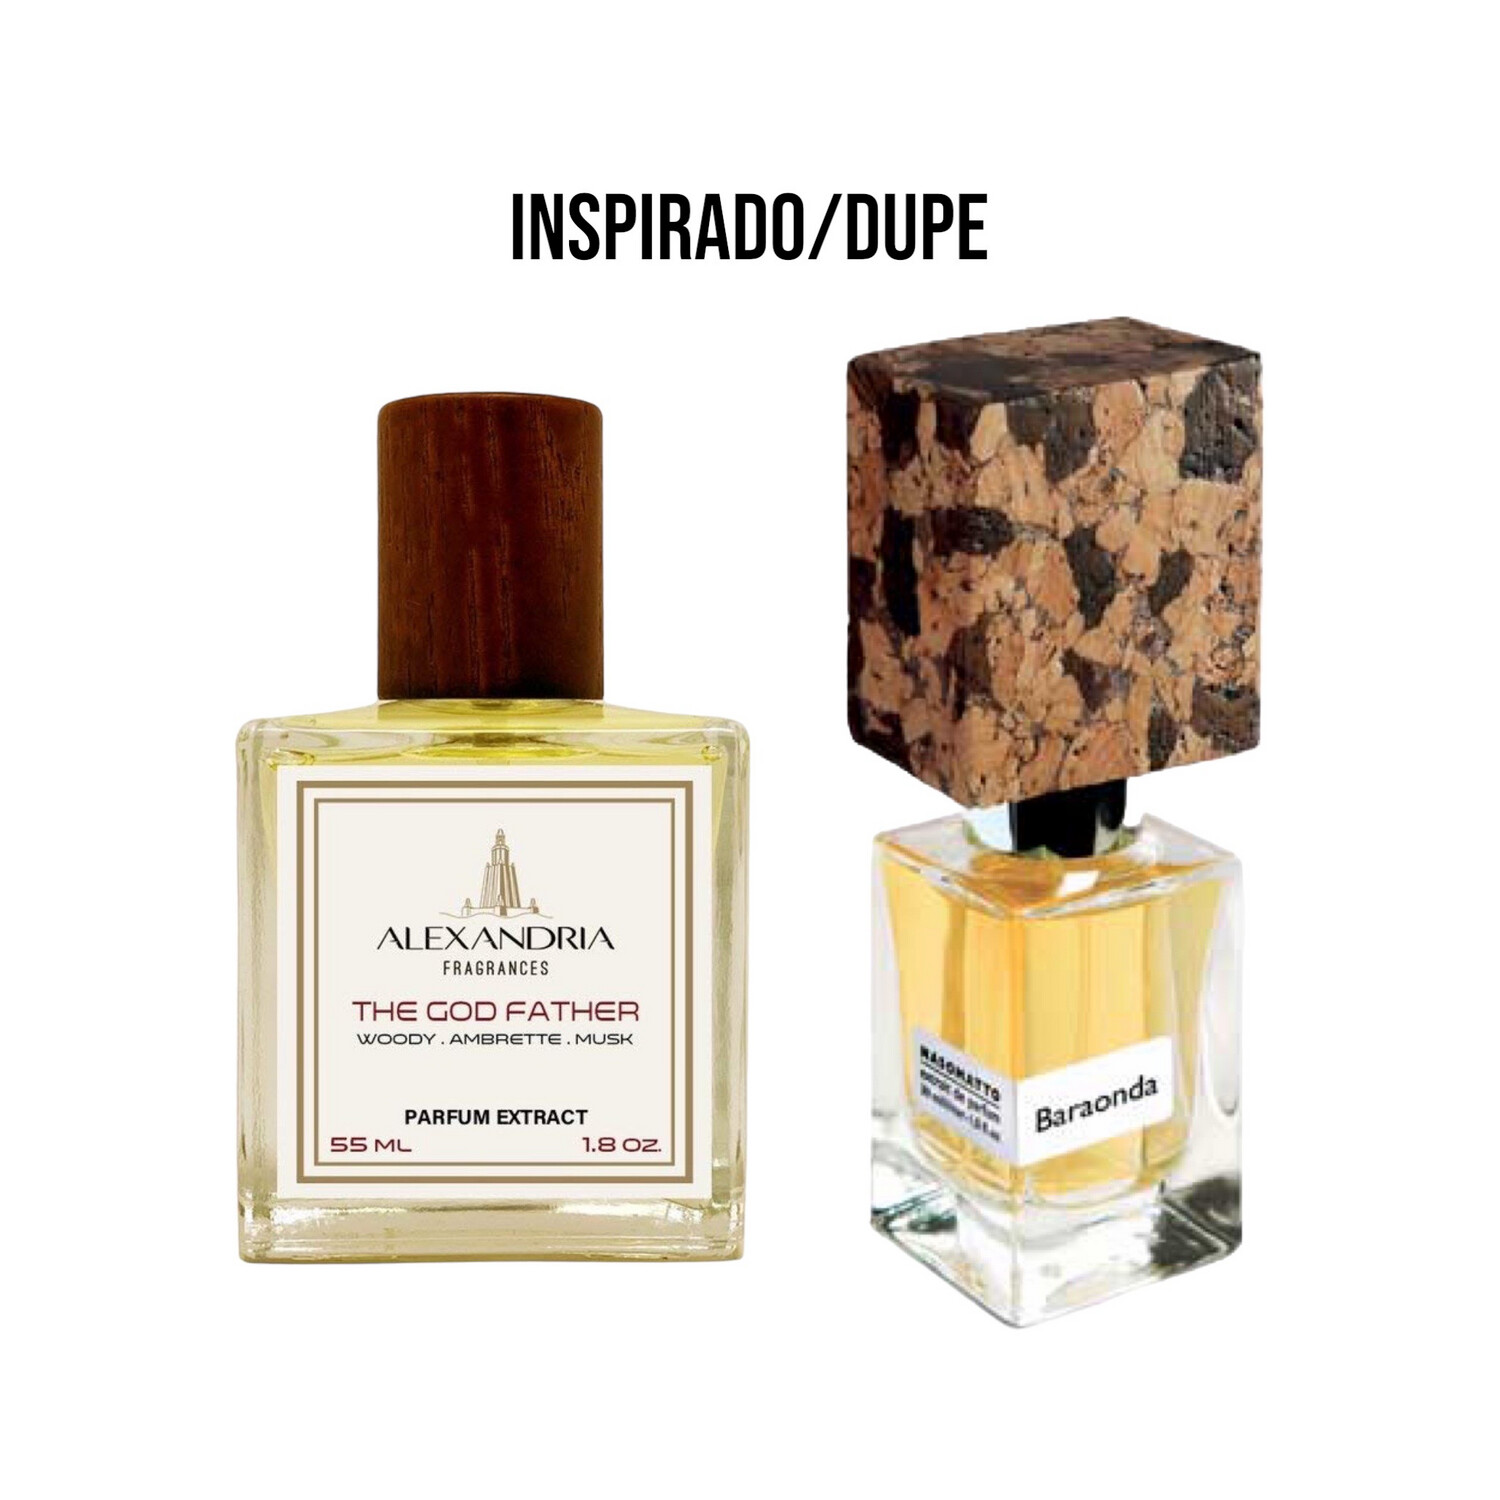 The God Father Inspirado en Nasomatto Baraonda 55ML extracto perfume Alexandria Fragrances